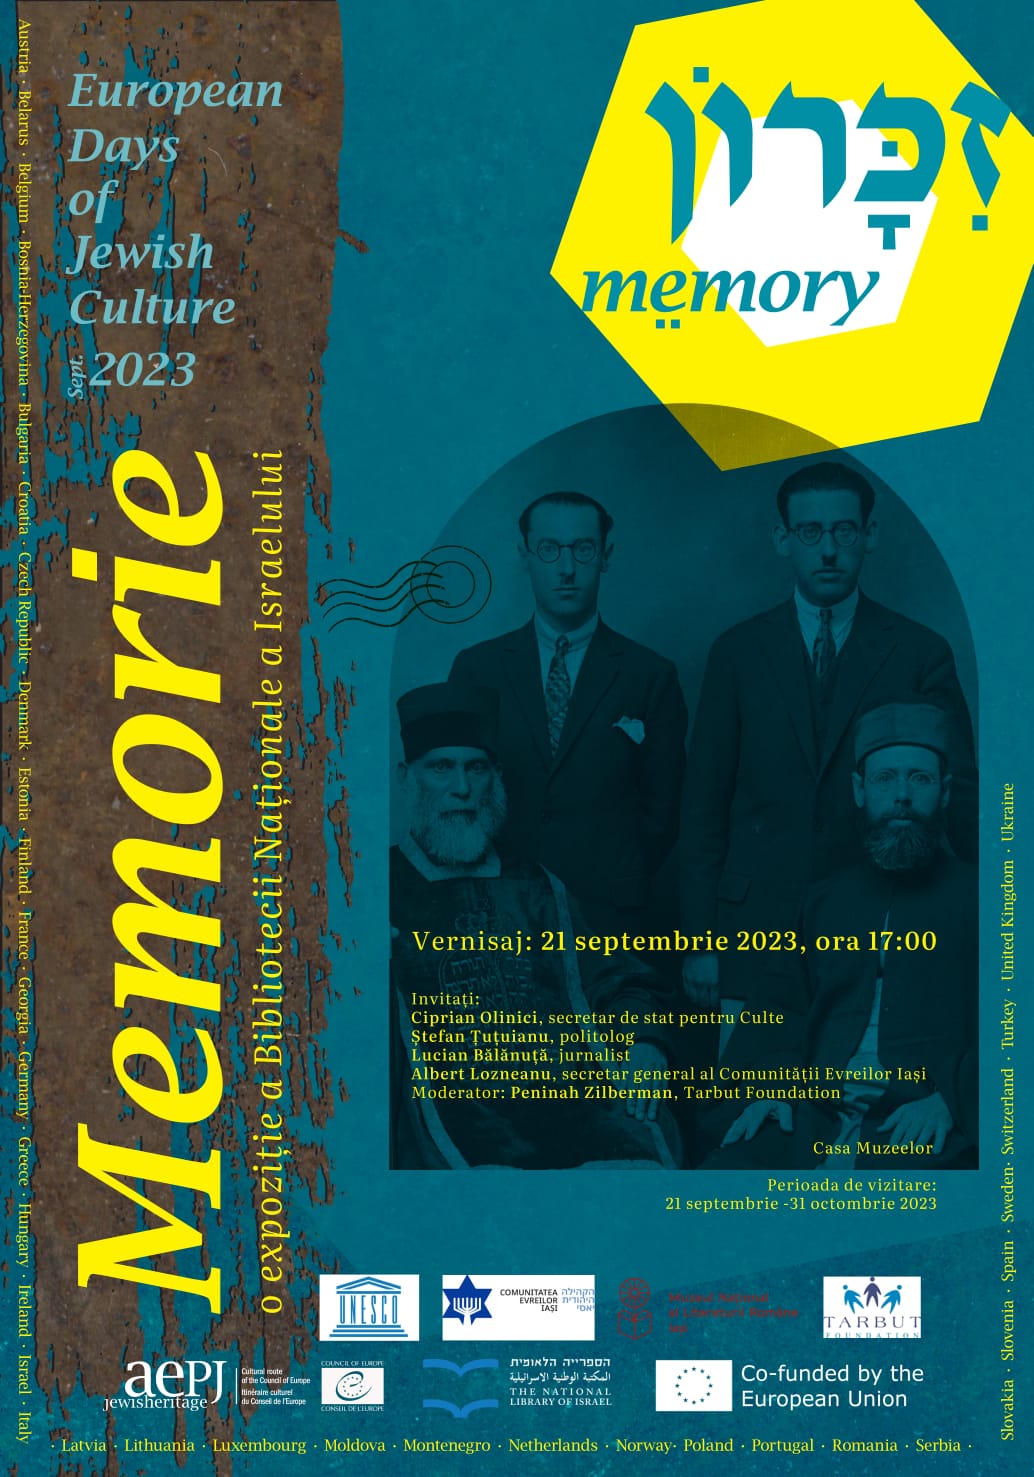 Memorie, o expoziție concepută de Biblioteca Națională a Israelului